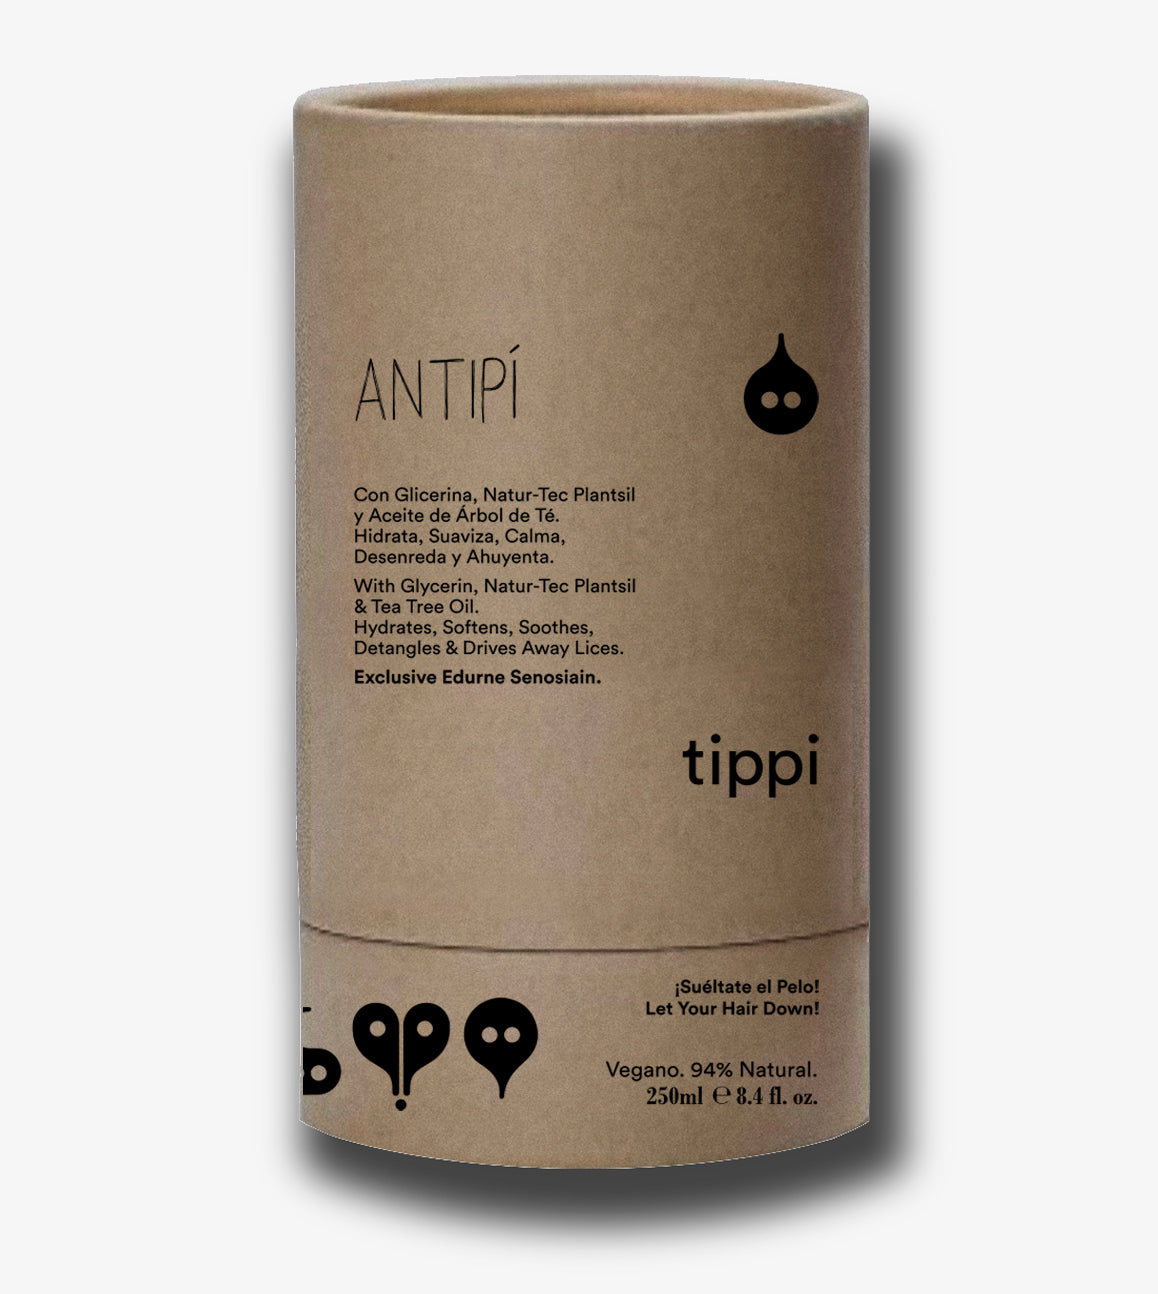 Antipí TIPPI by Edurne Senosiain 250ML